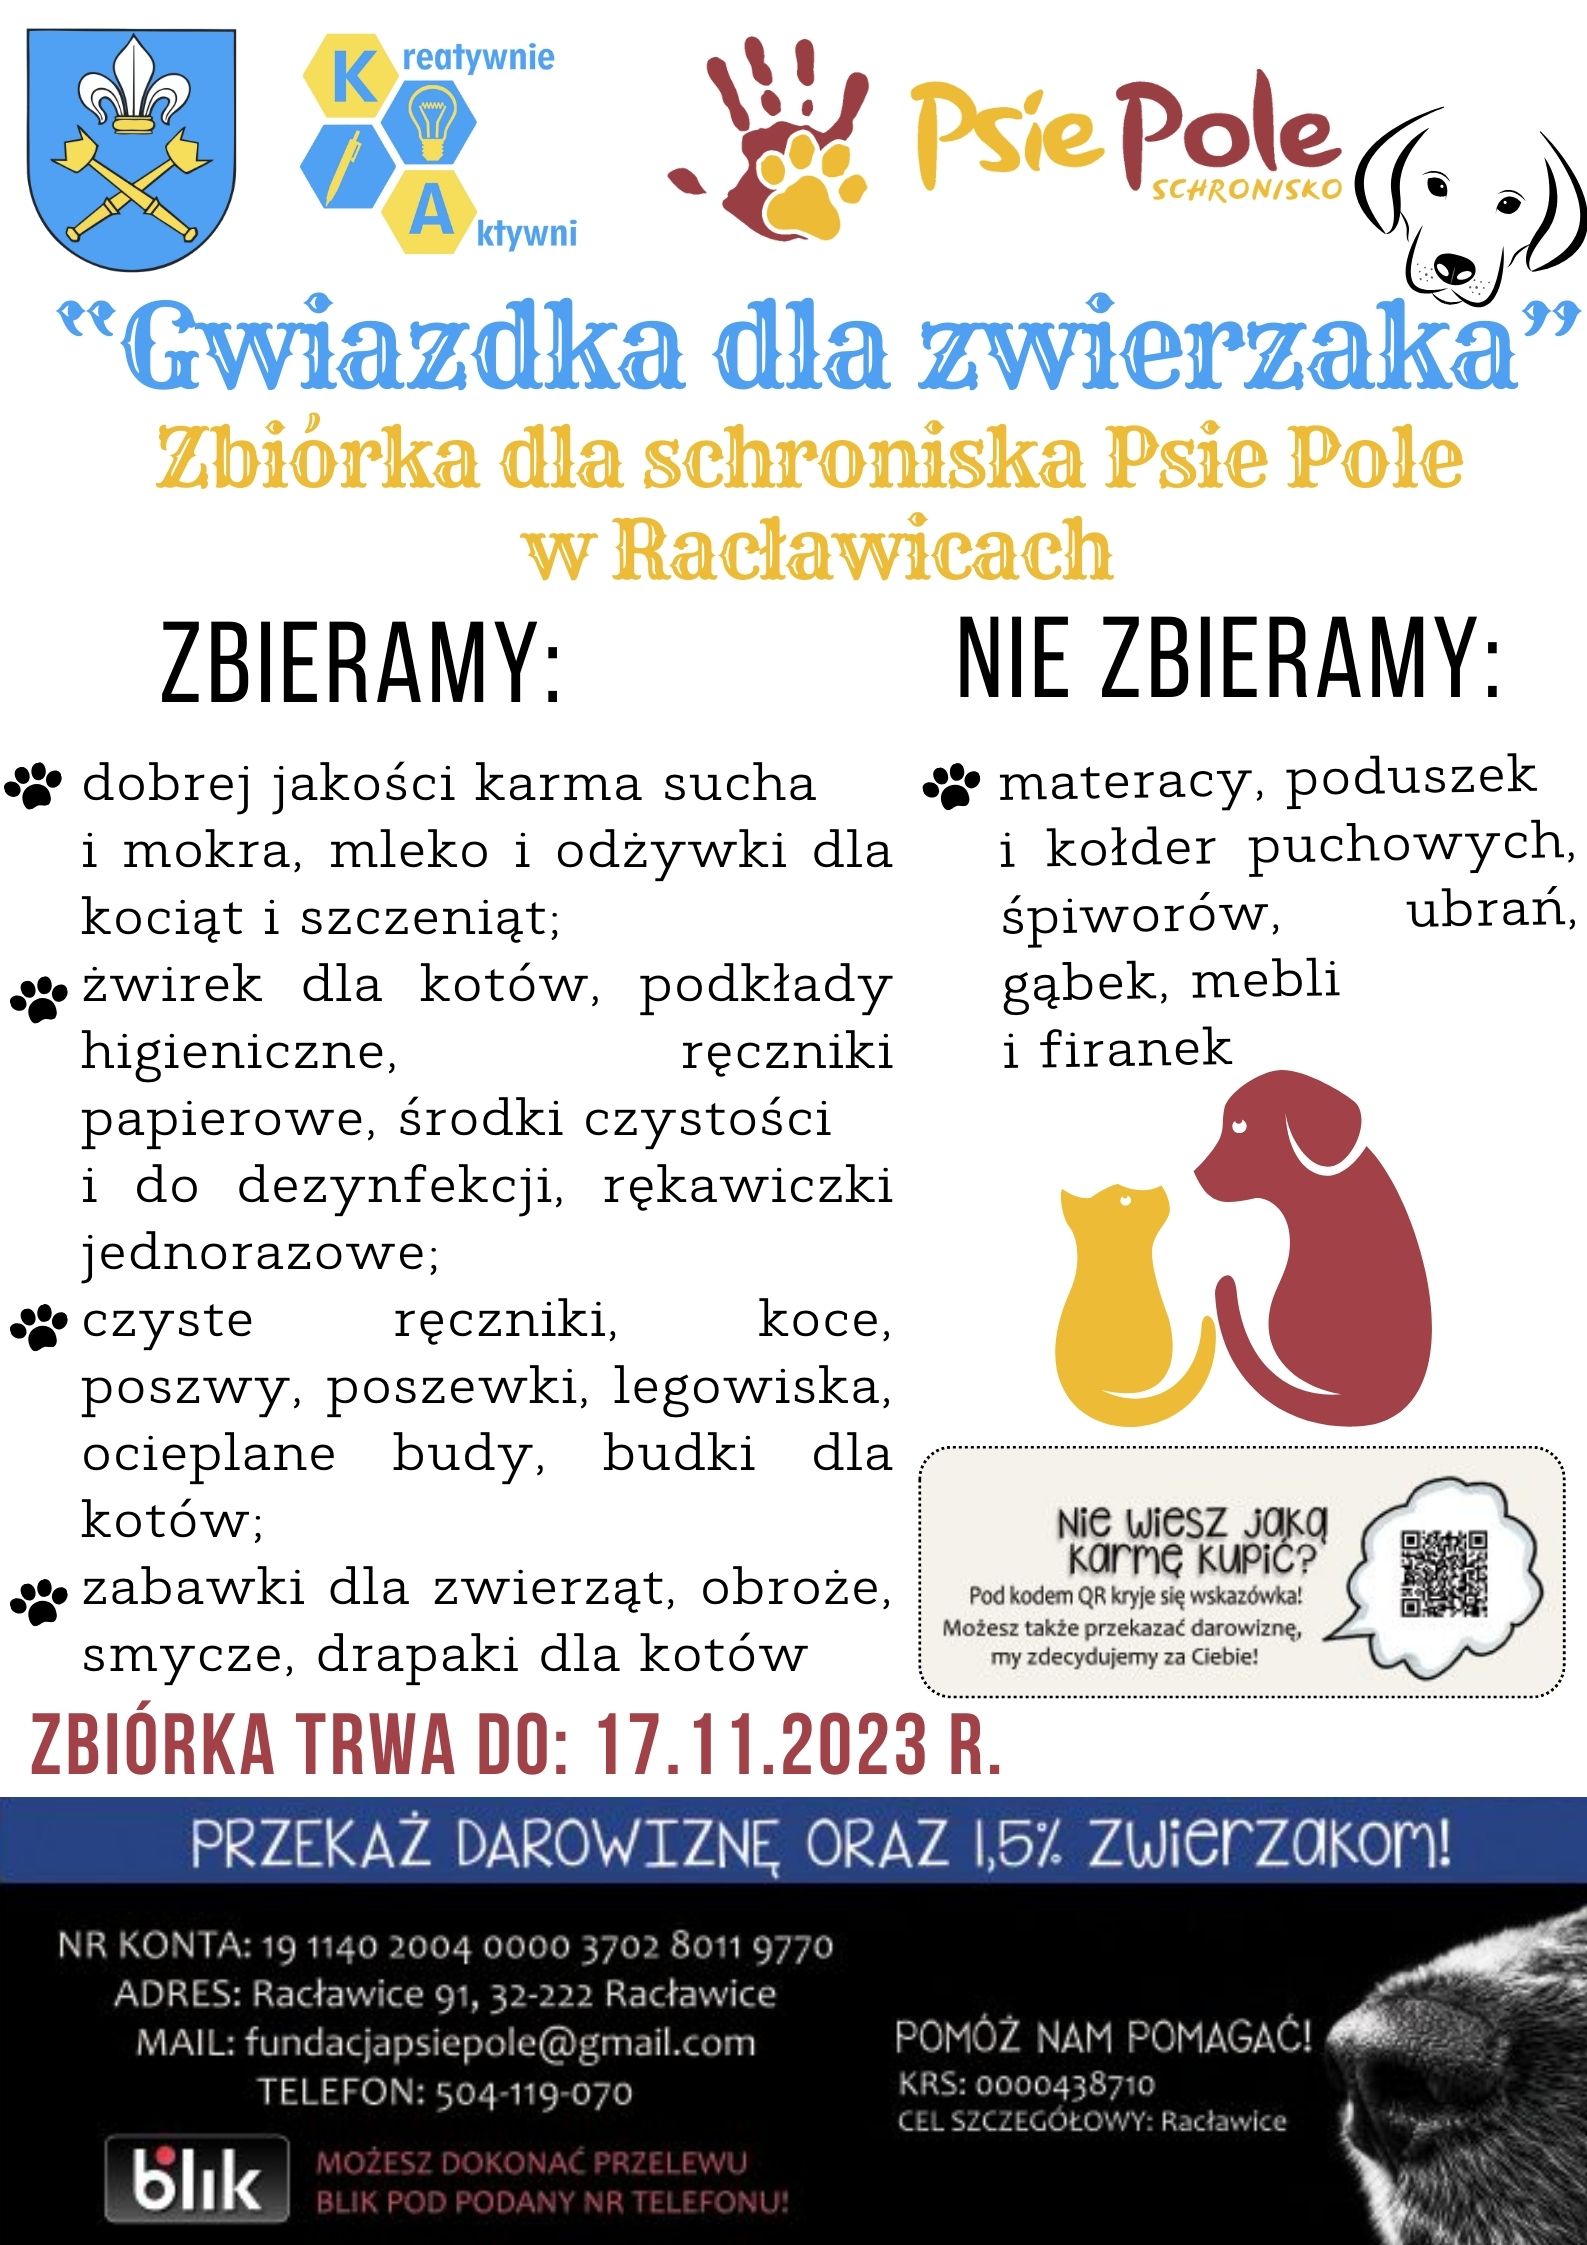 Zbiórka dla Schroniska Psie Pole w Racławicach